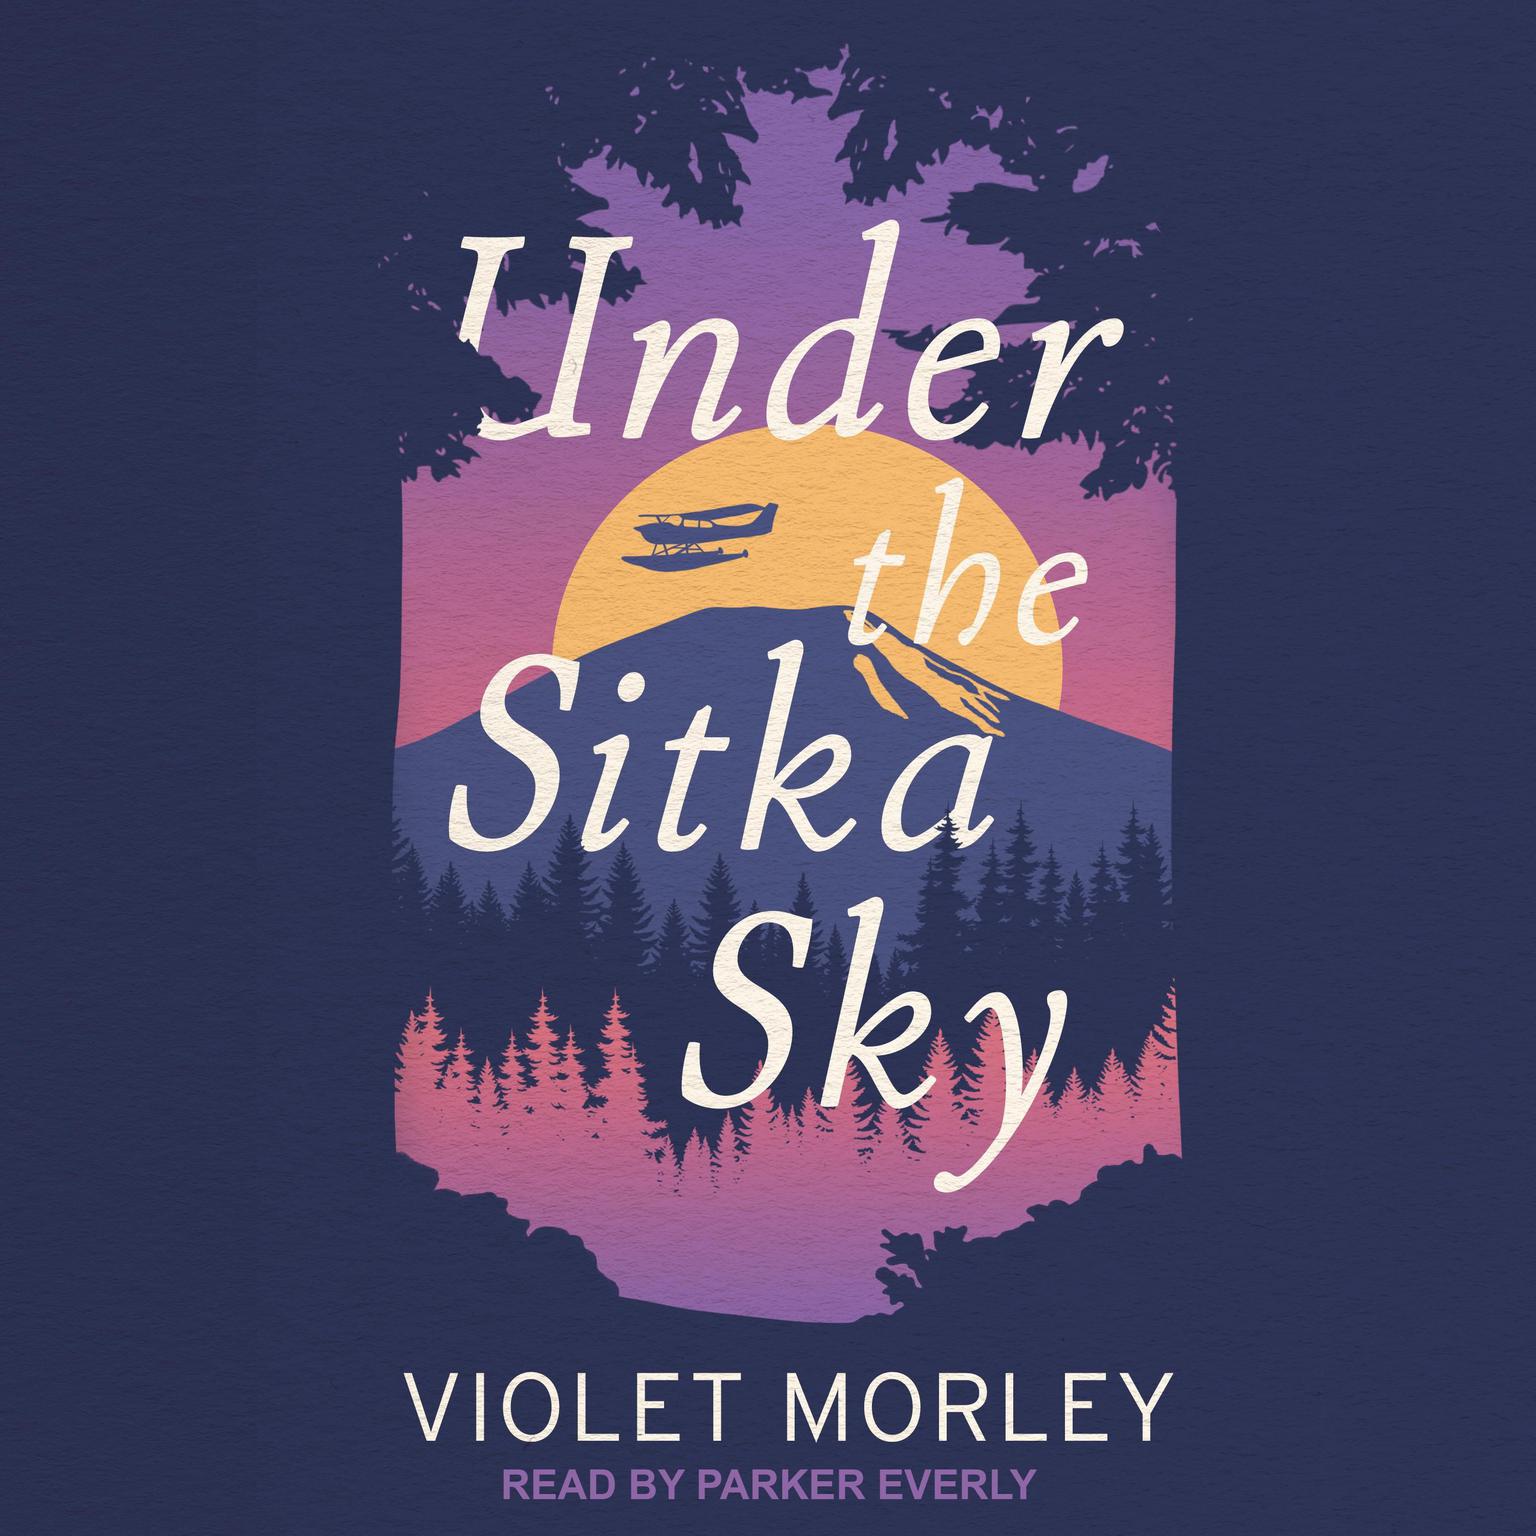 Parker Everly, Violet Morley: Under the Sitka Sky (AudiobookFormat, 2021, self)